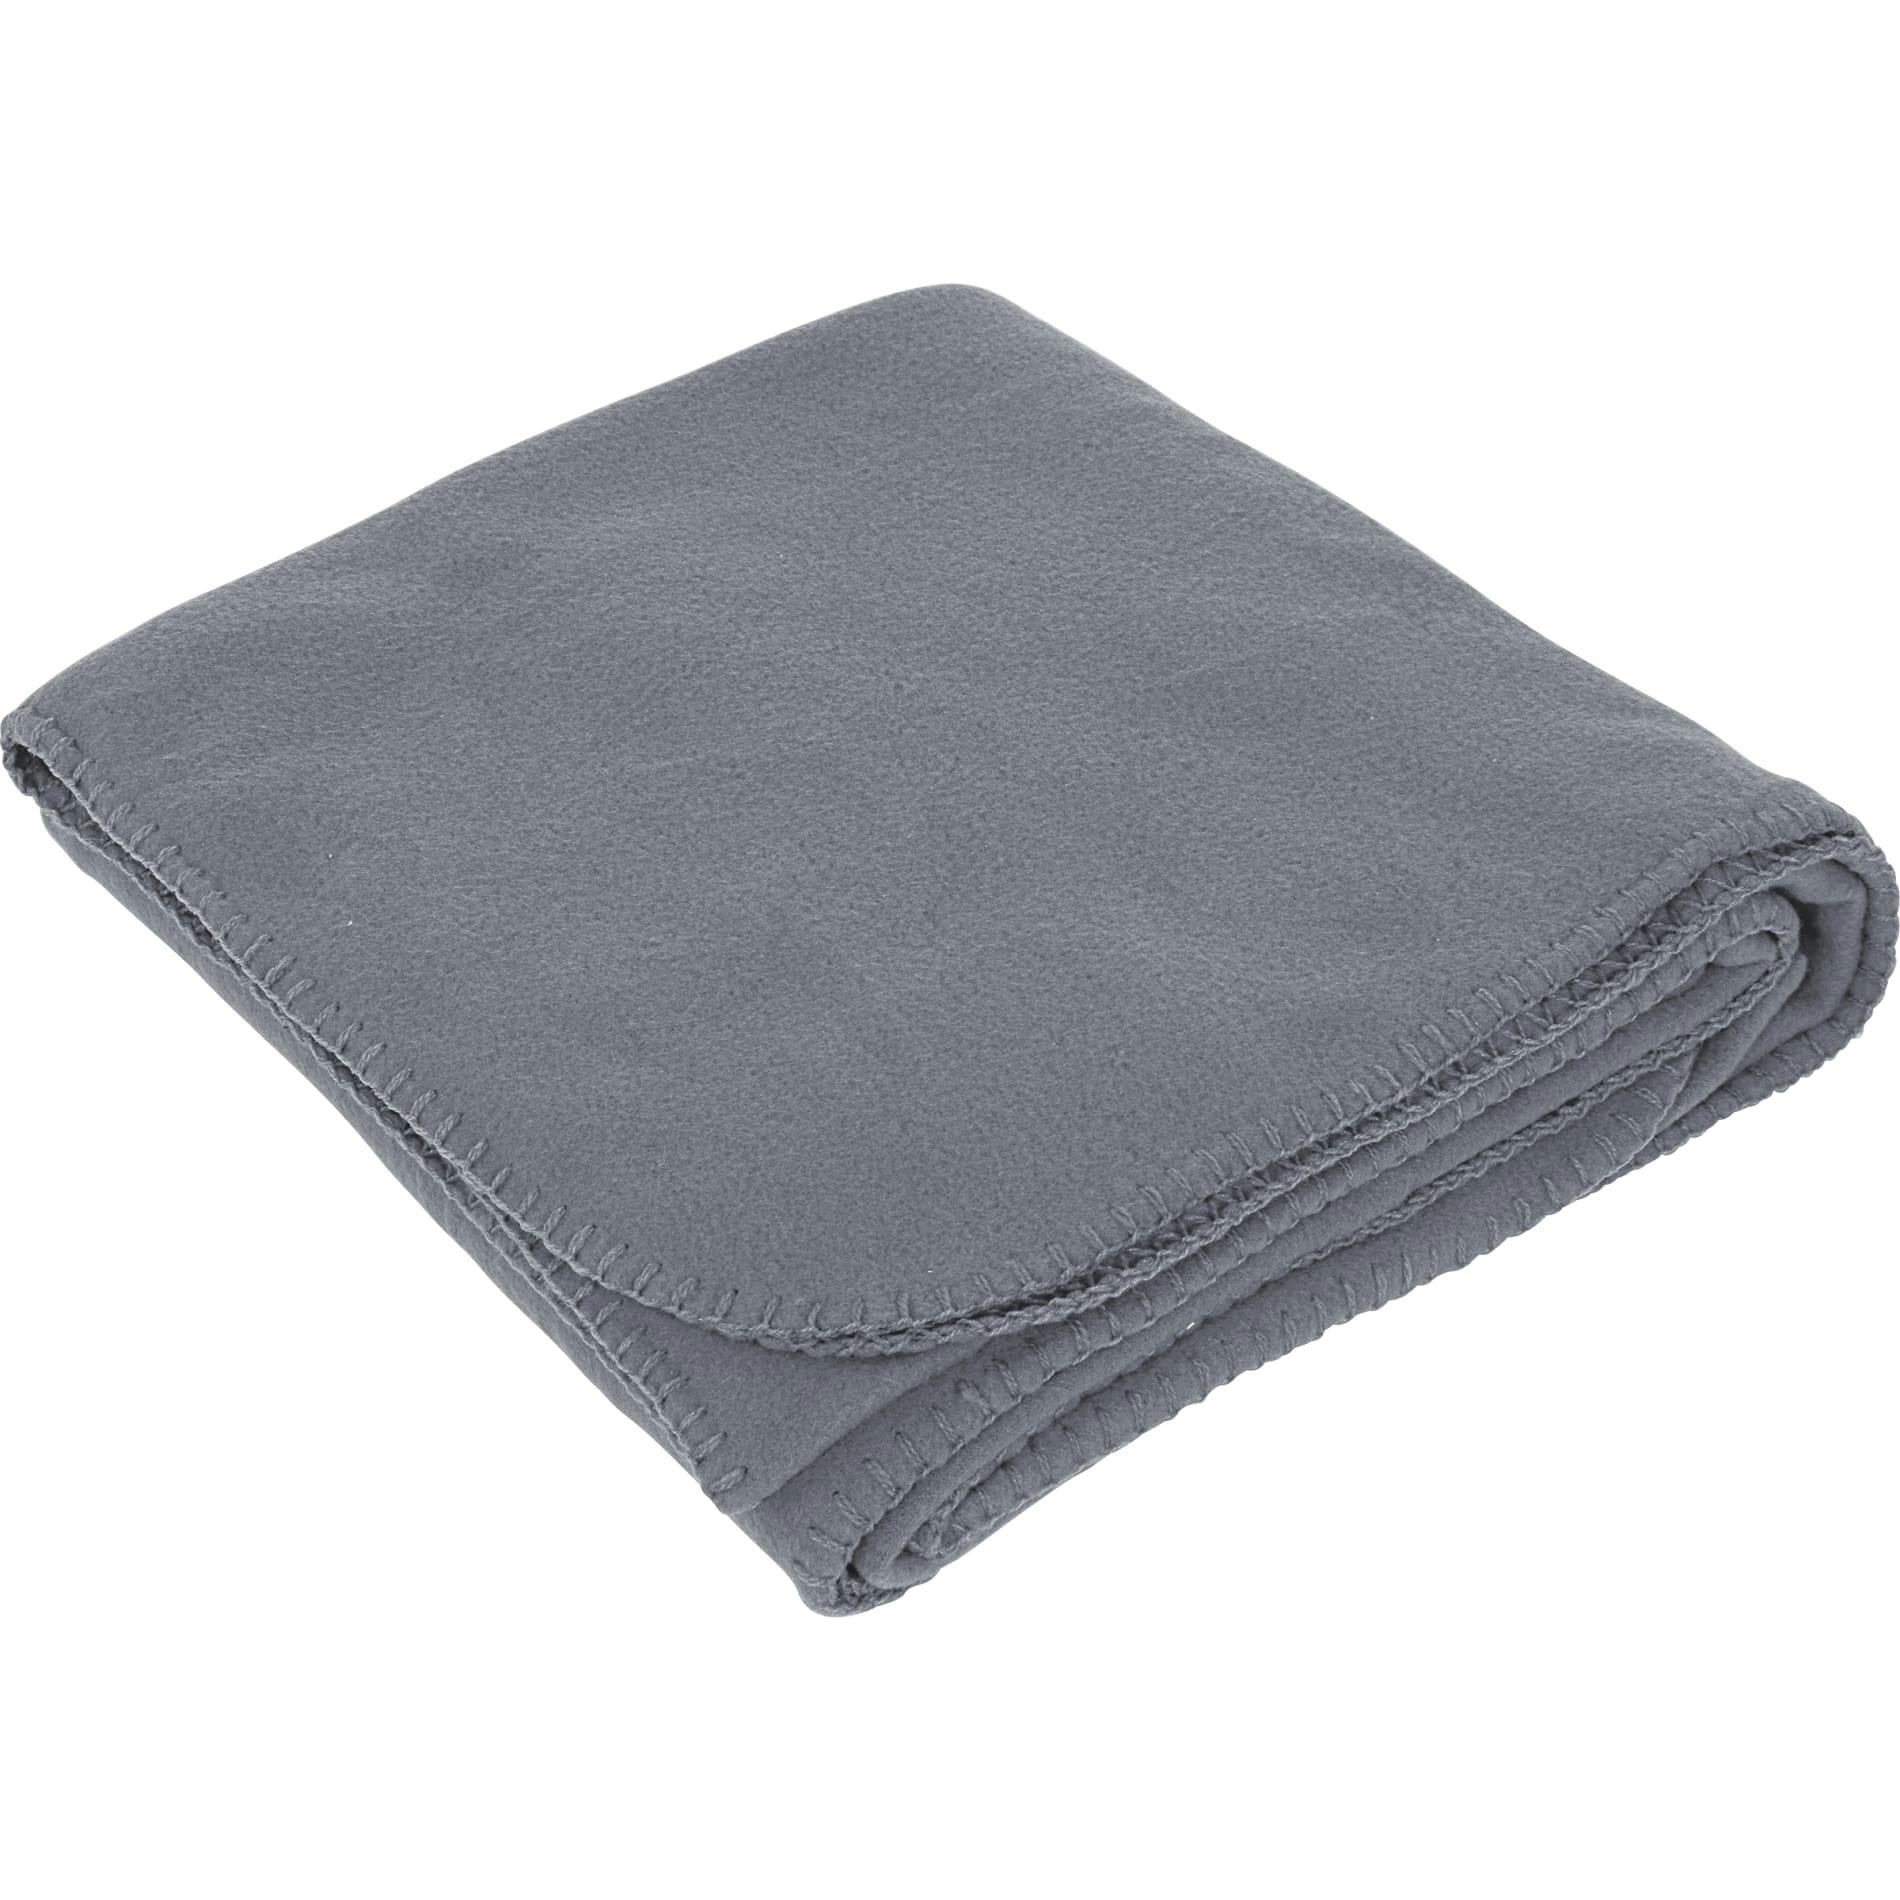 Fleece Blanket - additional Image 2